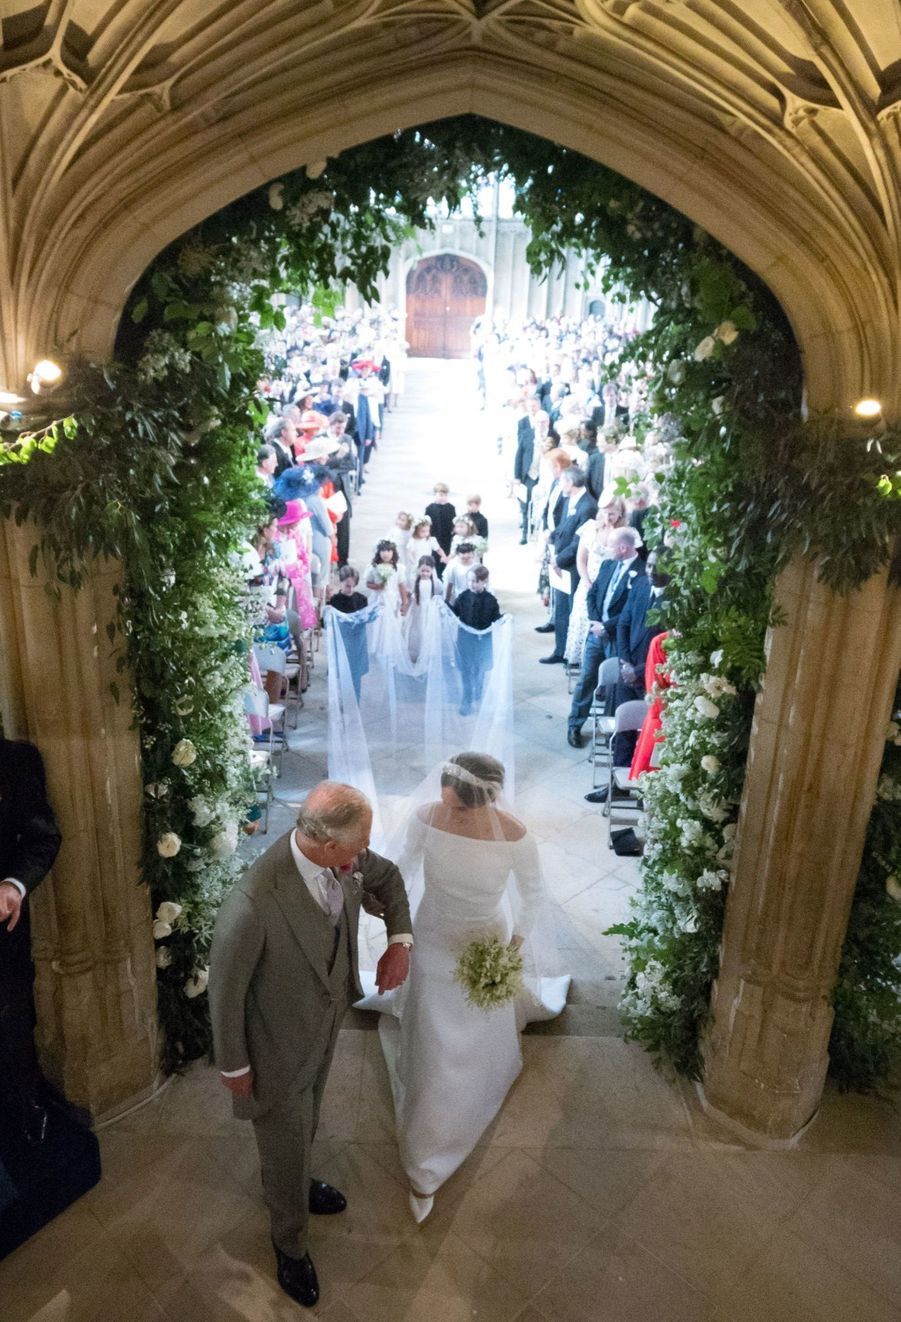 Le mariage du prince Harry et Meghan Markle en photos